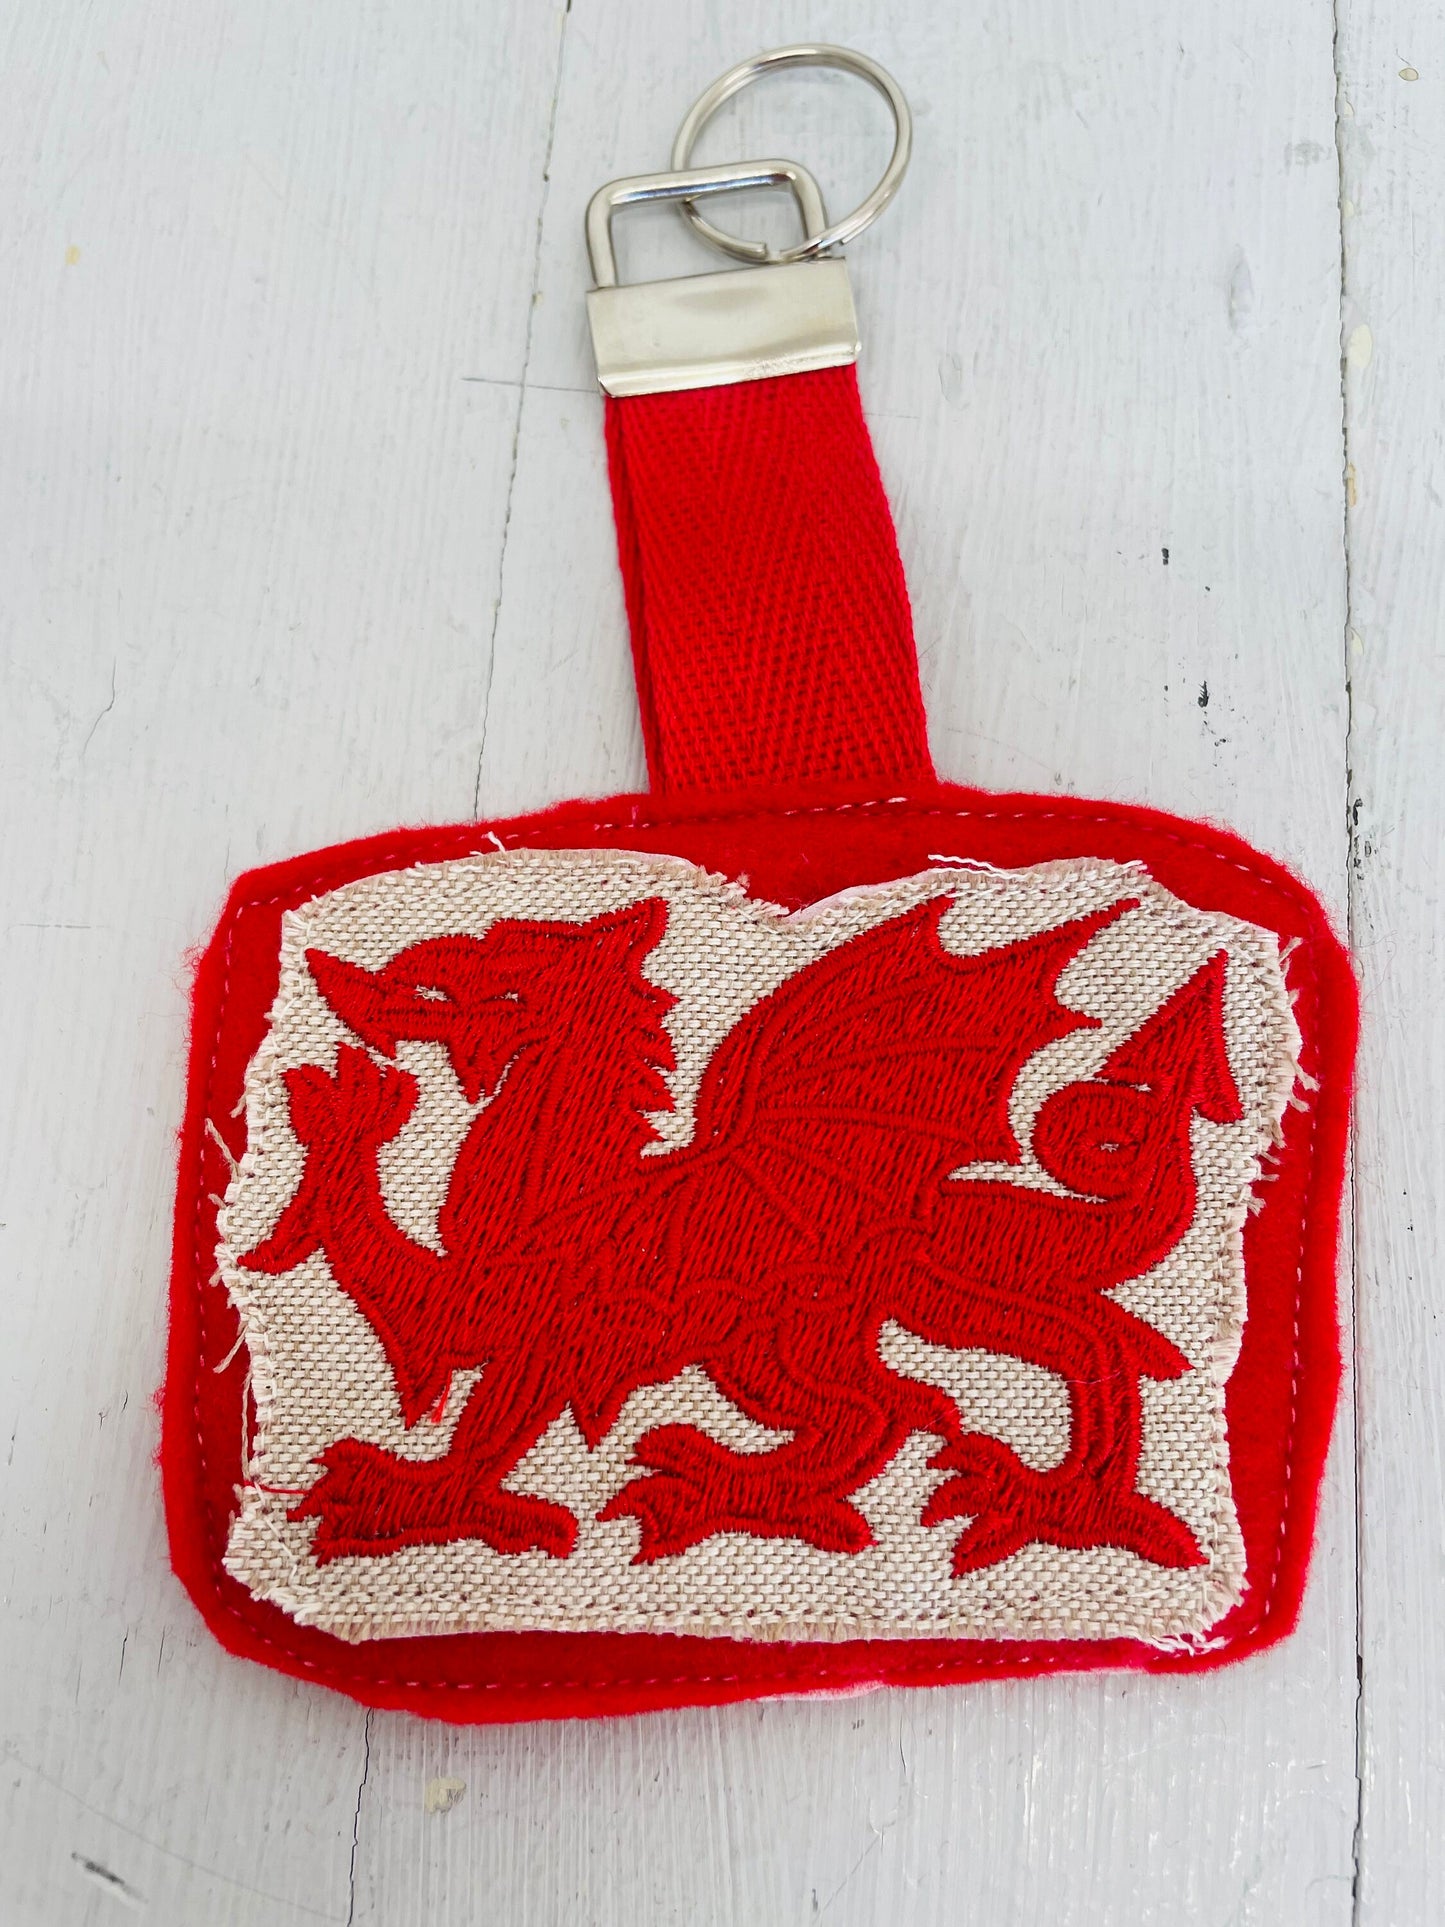 Welsh Dragon keyring . Fabric keychain